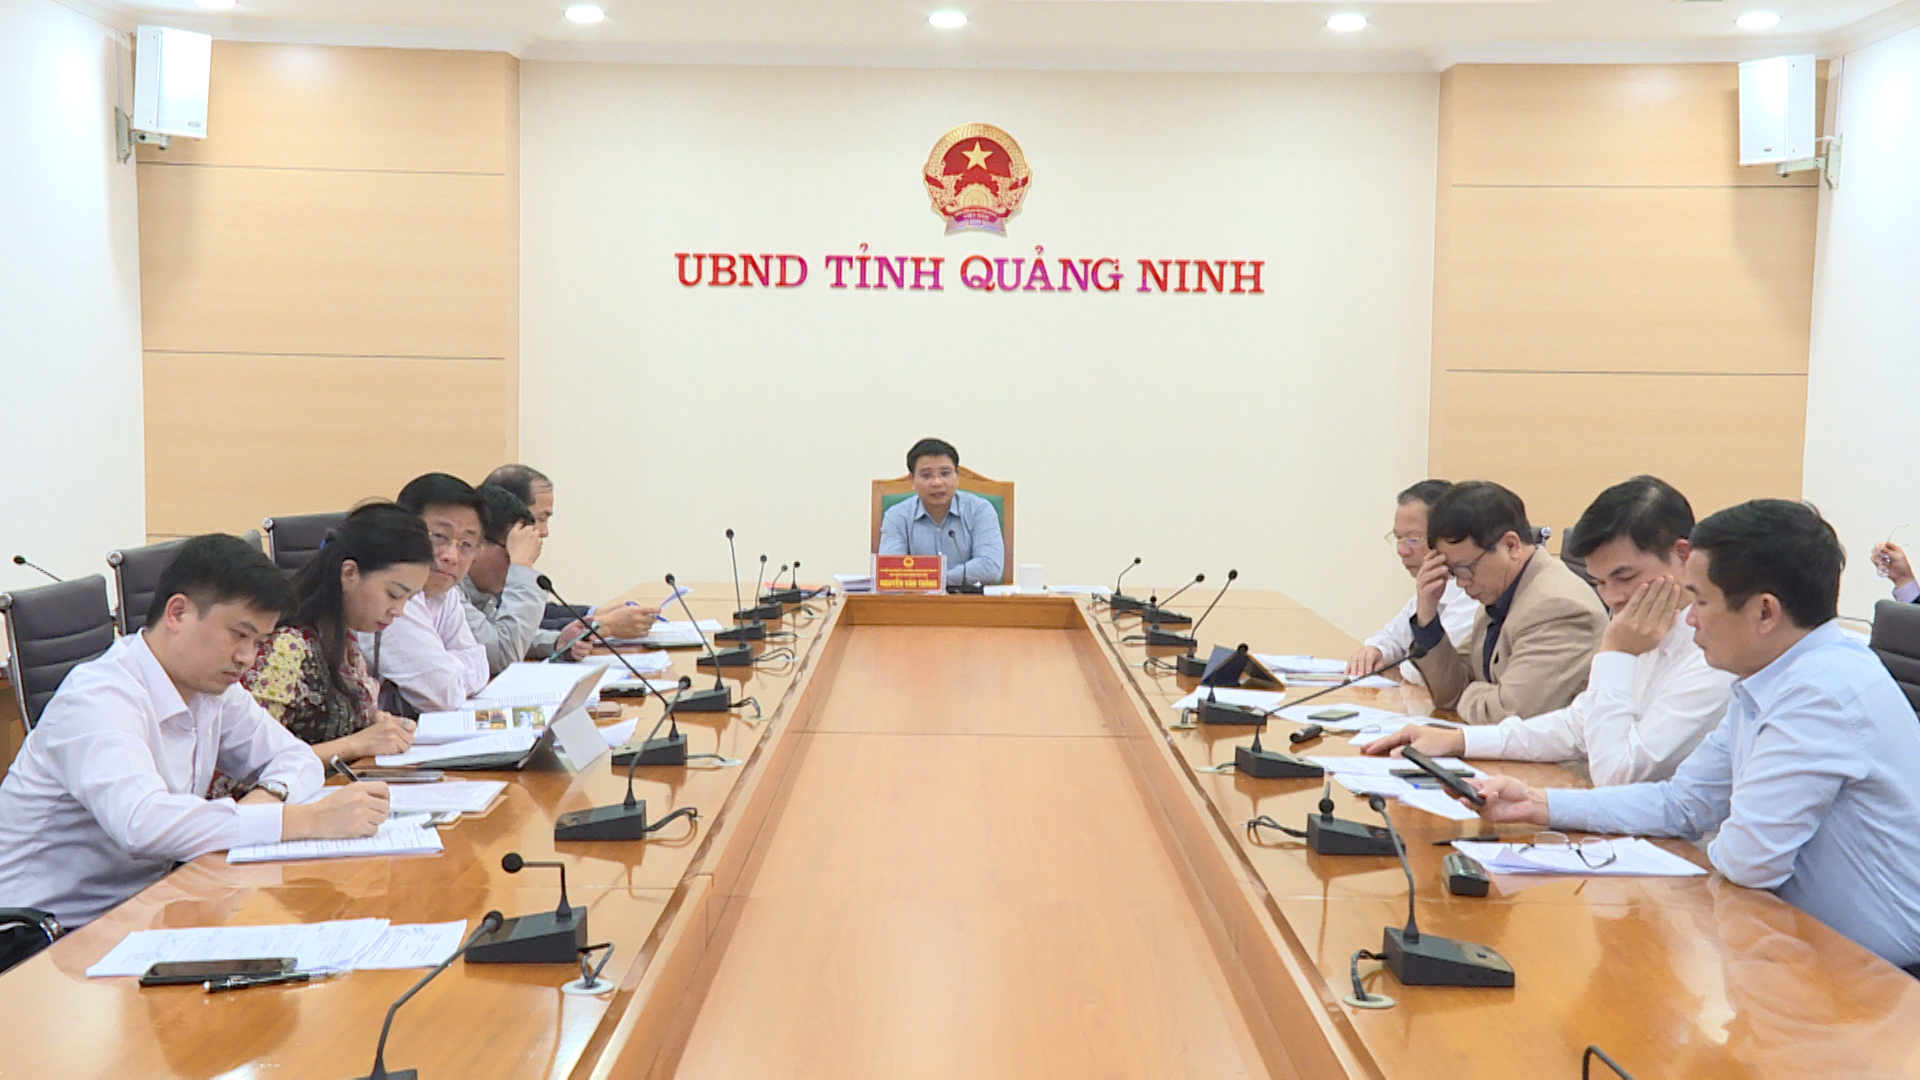 Đồng chí Nguyễn Văn Thắng, Chủ tịch UBND tỉnh phát biểu kết luận